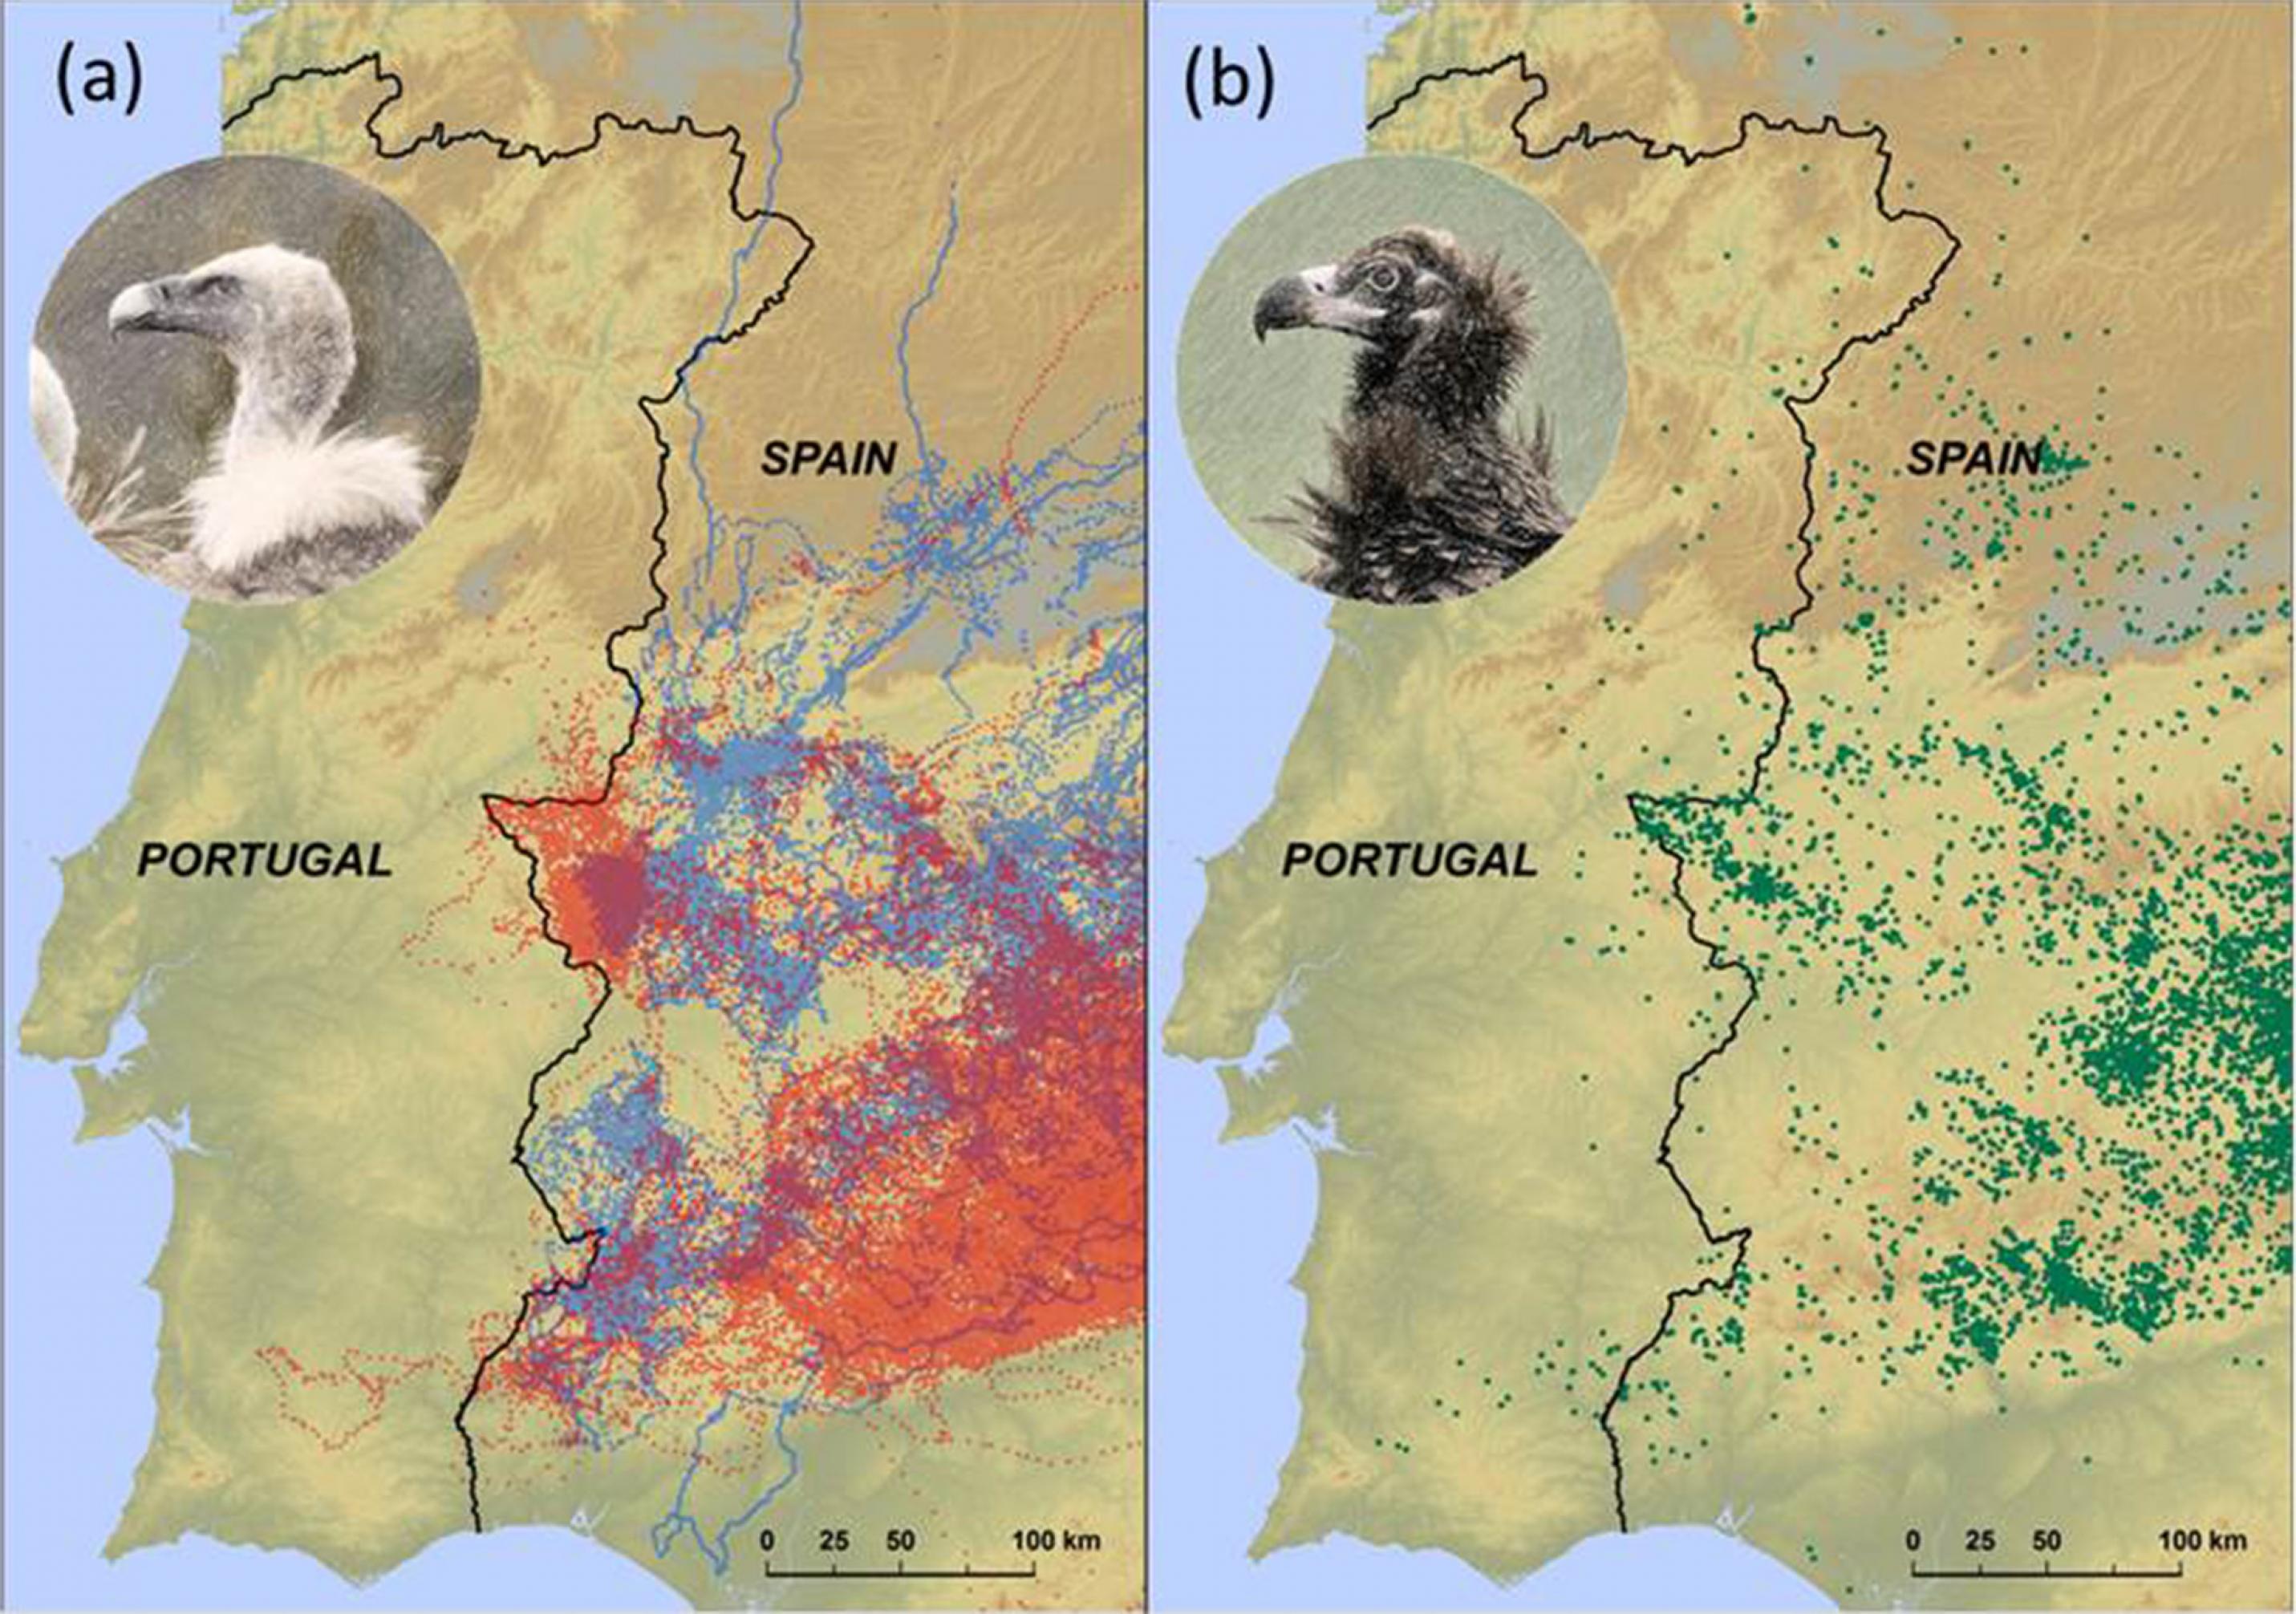 Zwei Karten der Iberischen Halbinsel. Auf der linken sind mit Rot und Blau Flugrouten eingezeichnet, auf der rechten mit Grün. Auf beiden Karten ist zu erkennen, dass die Tiere Portugal so gut wie vollständig meiden.